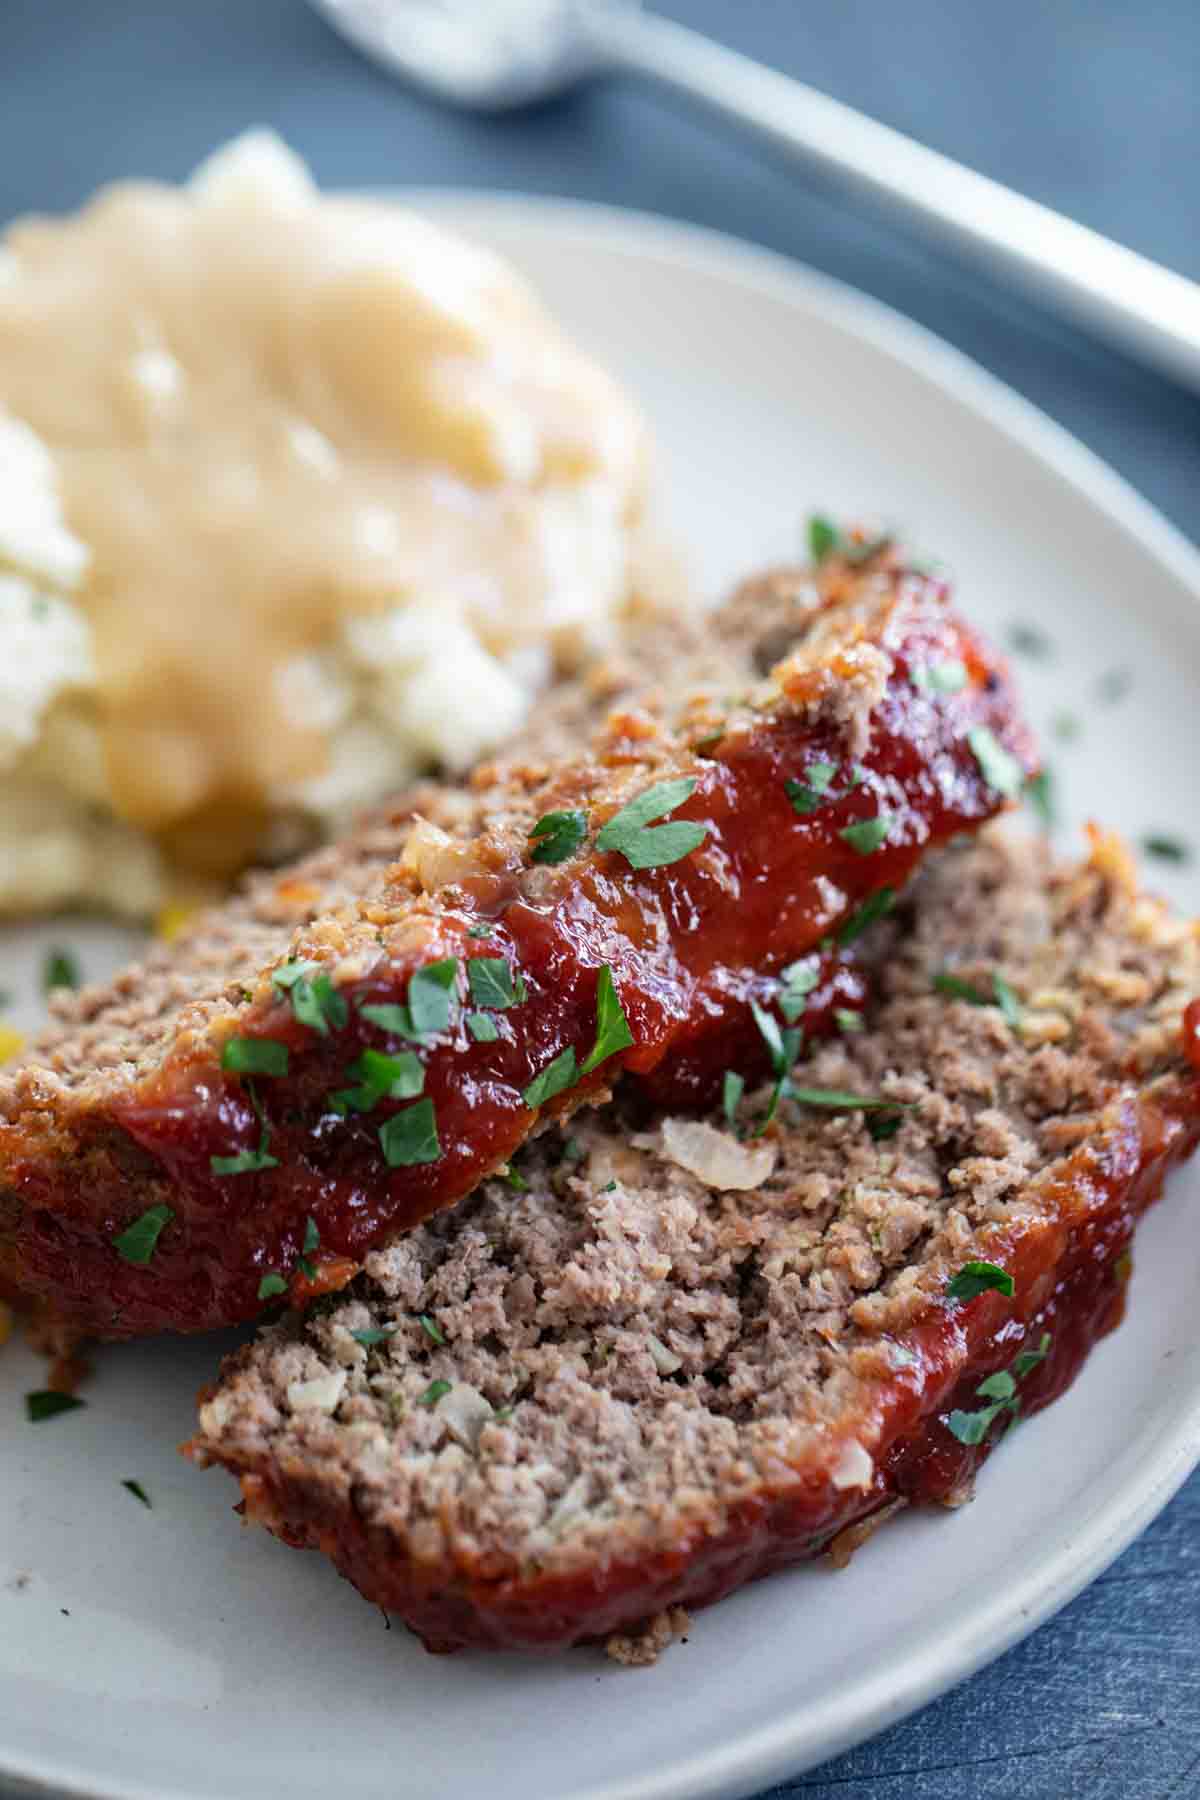 https://www.tasteandtellblog.com/wp-content/uploads/2020/04/Traditional-Meatloaf-Recipe-4.jpg